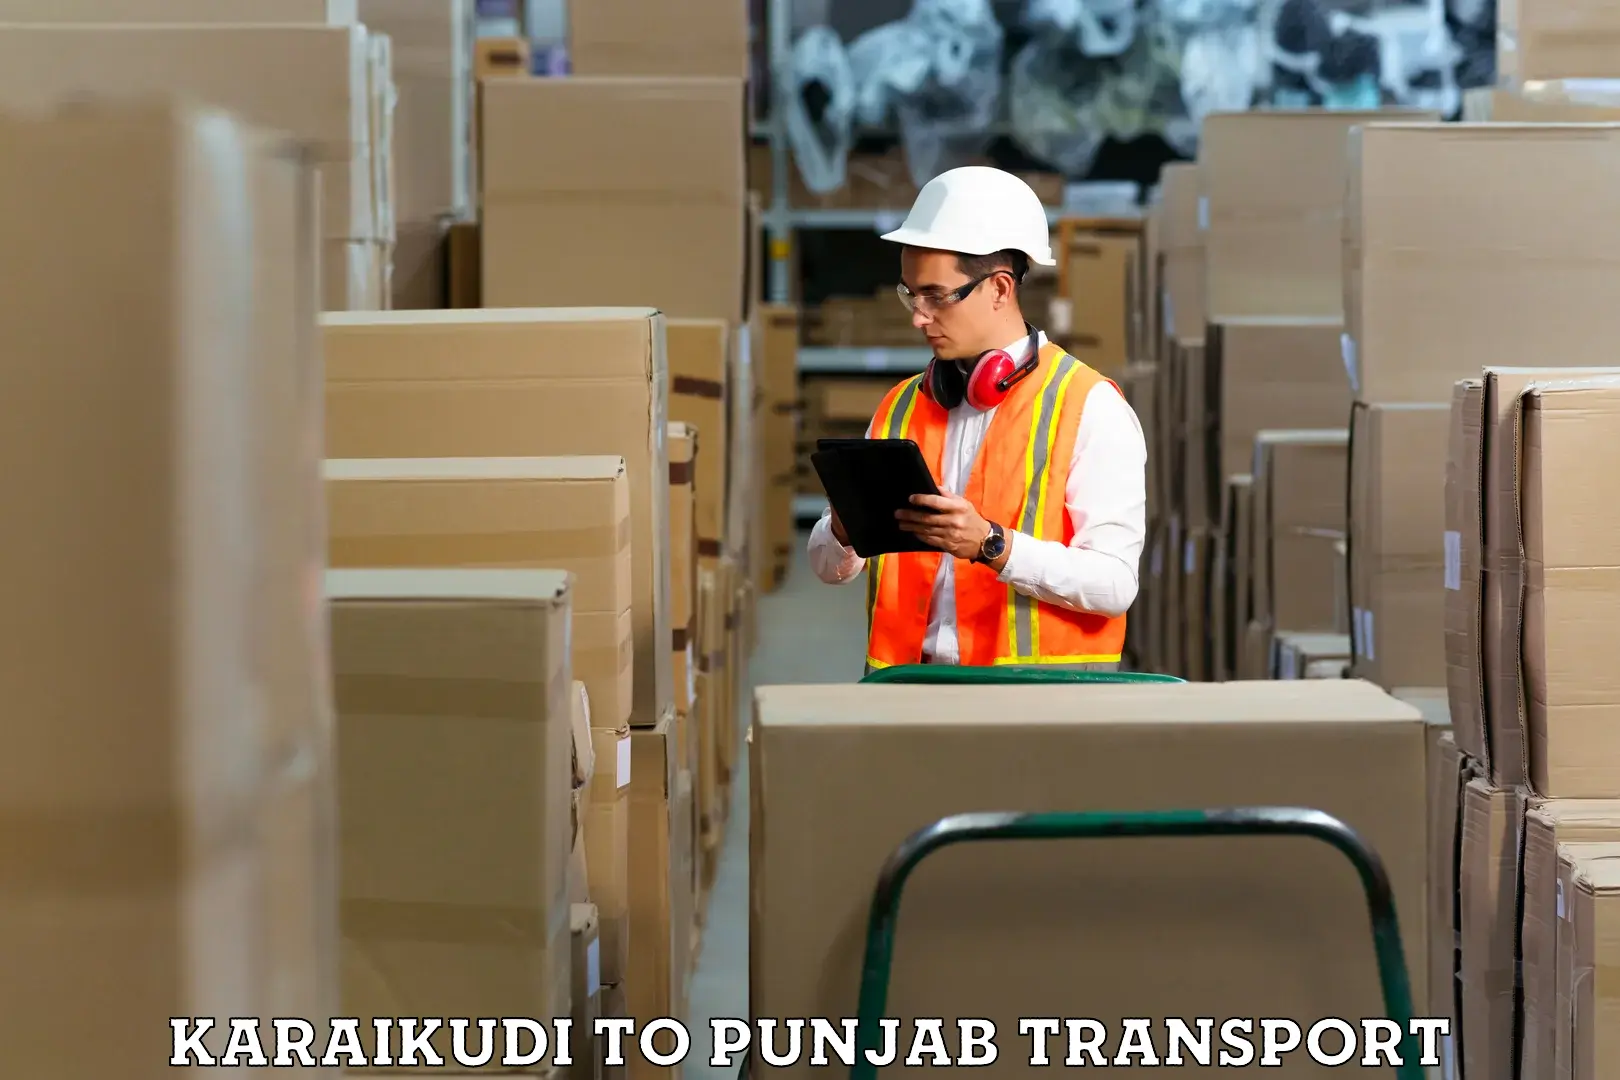 Road transport online services Karaikudi to Jalandhar